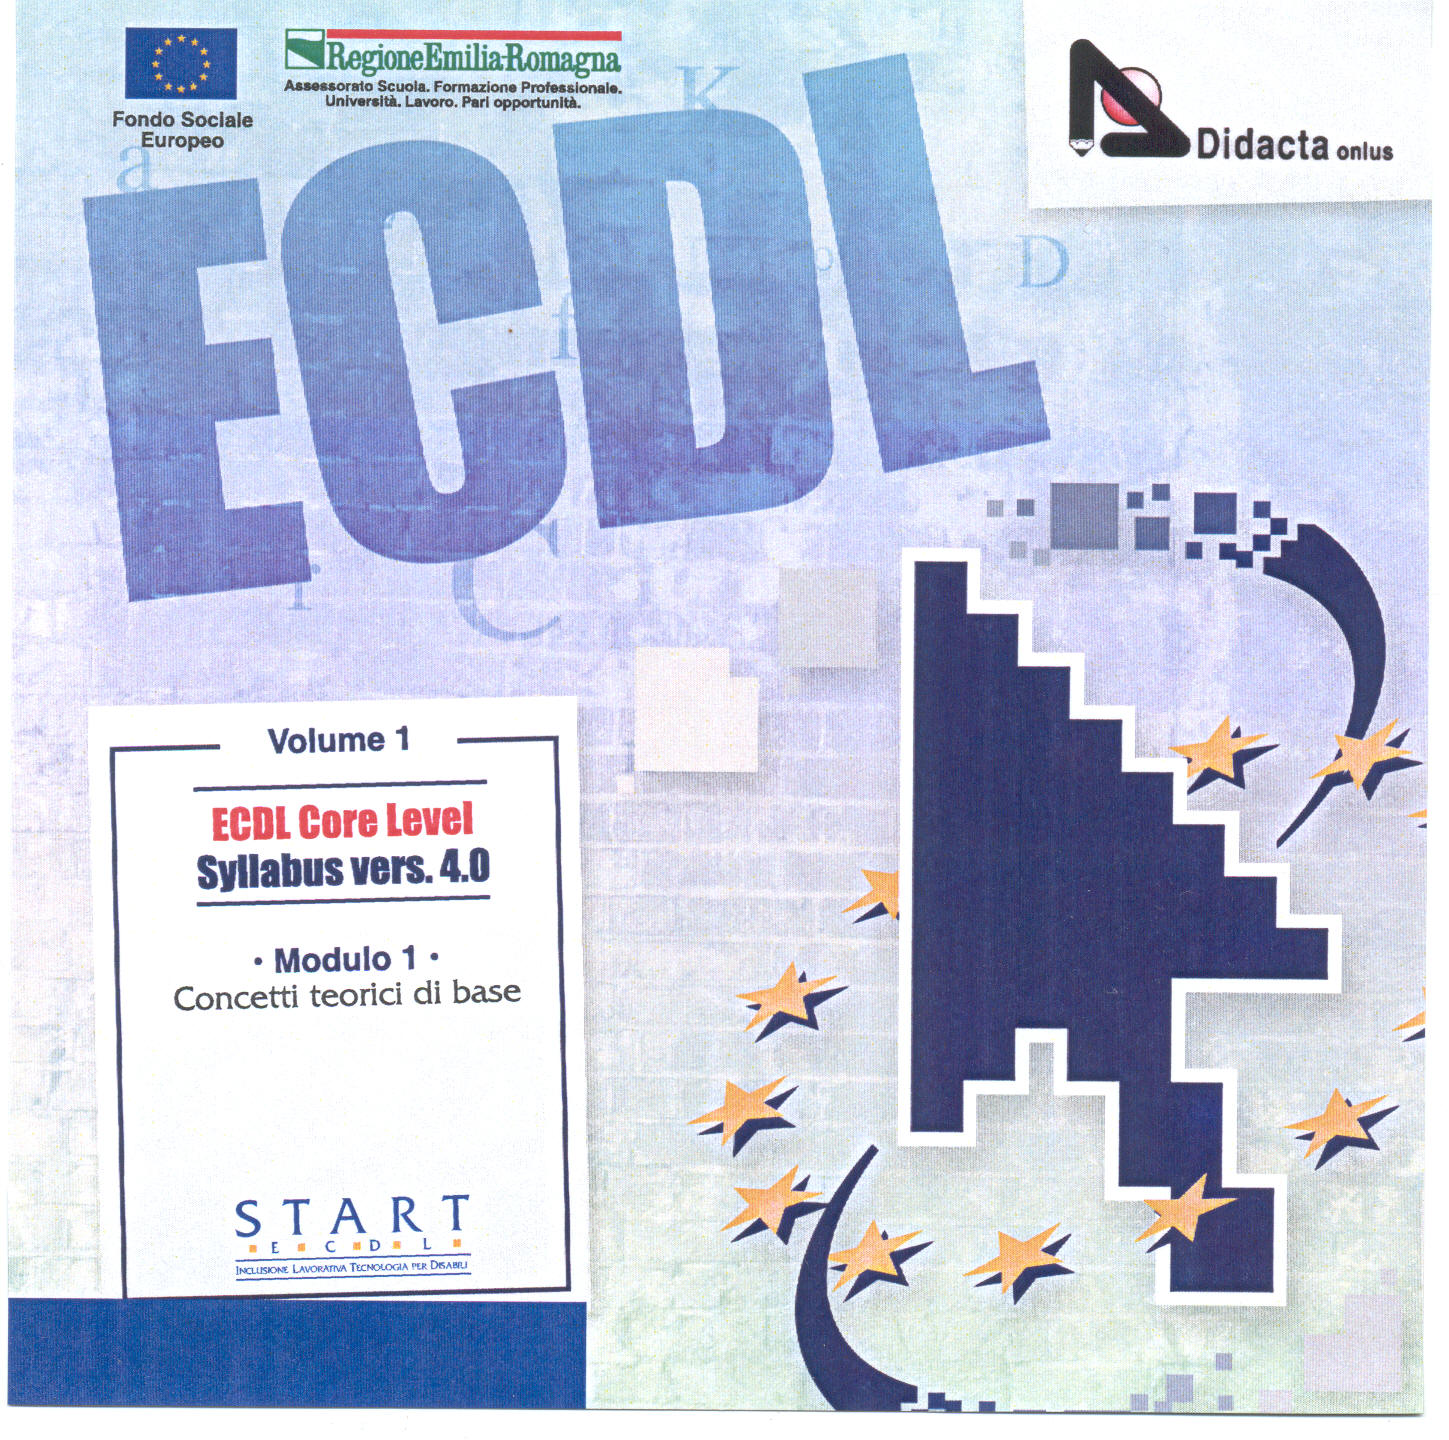 Copertina del cd contenente il corso ECDL per Persone Dislessiche